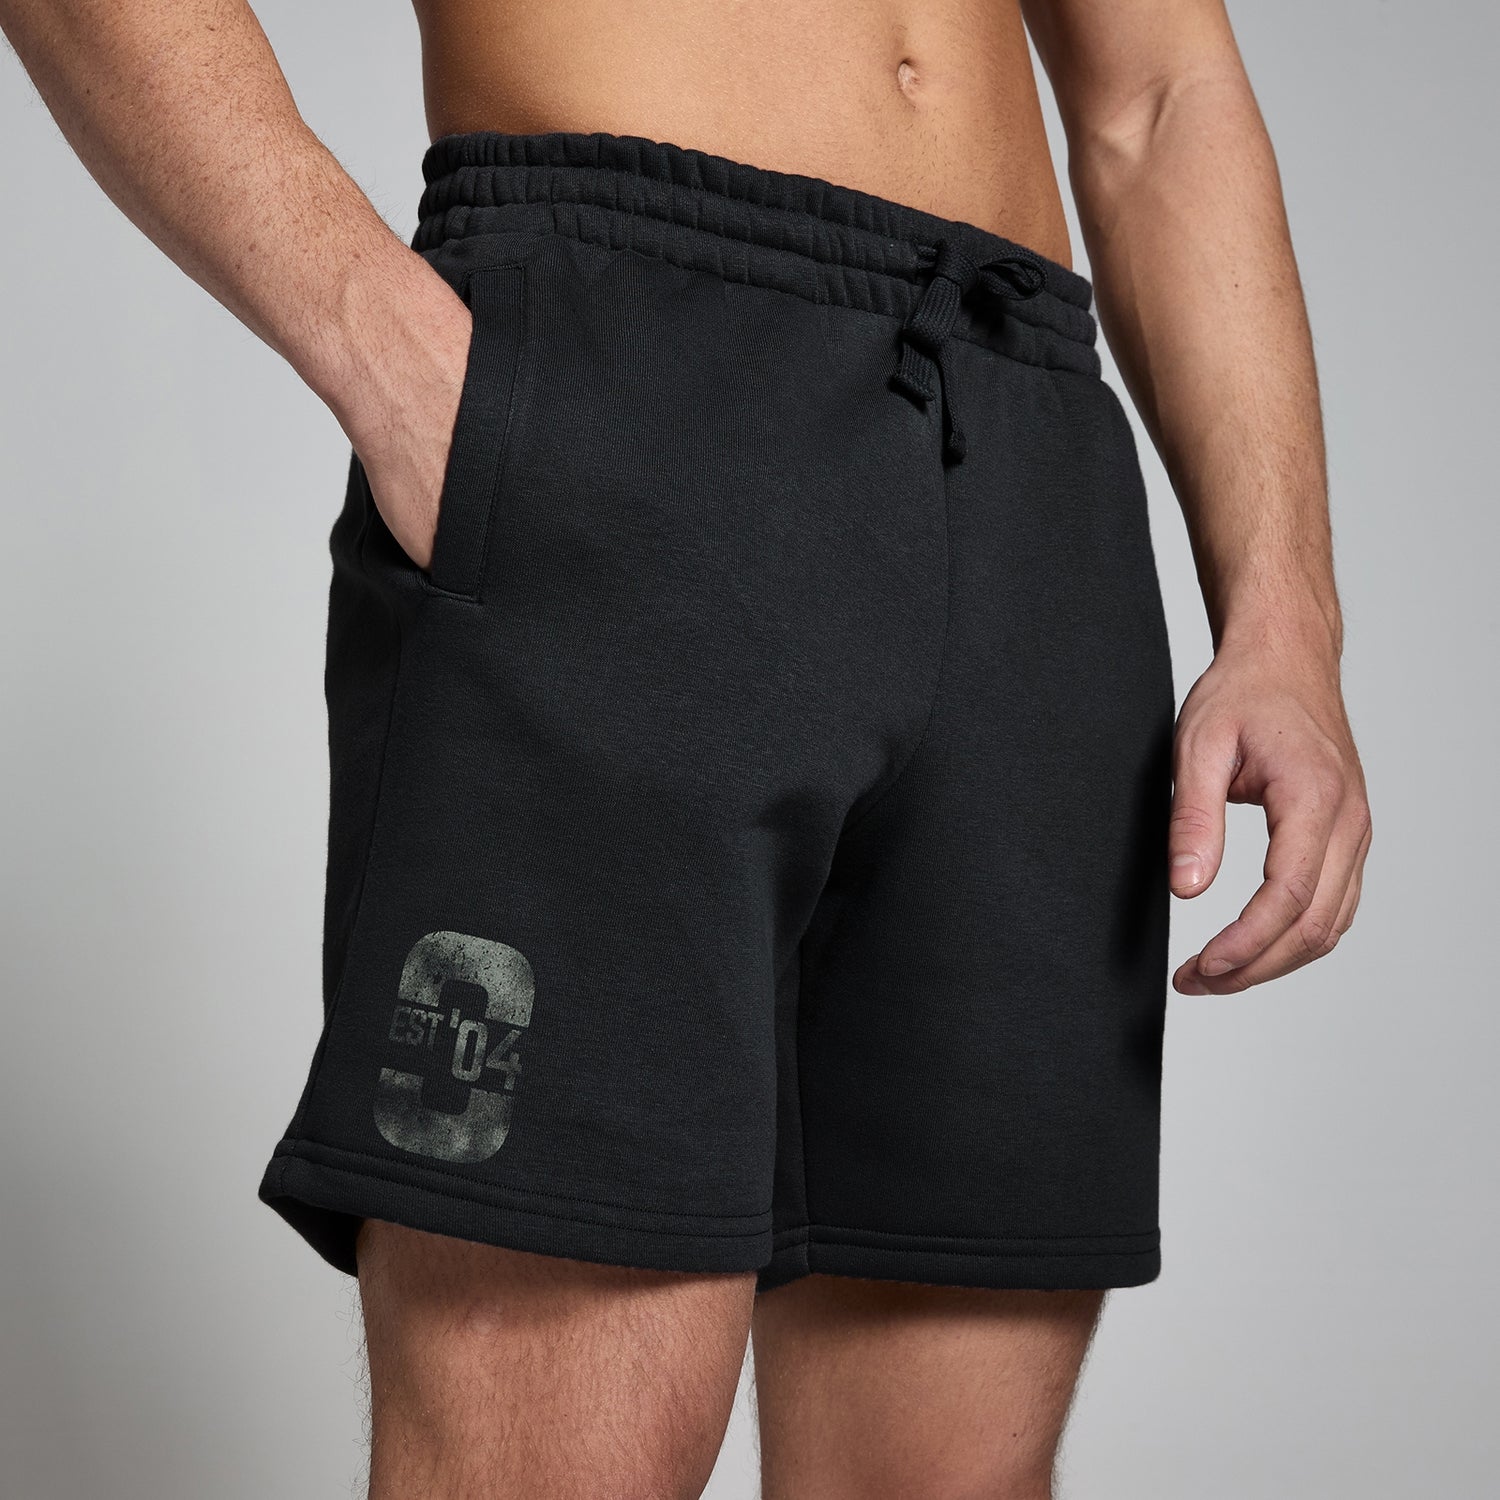 Pantalón corto deportivo con estampado gráfico Origin para hombre de MP - Negro lavado - XXL